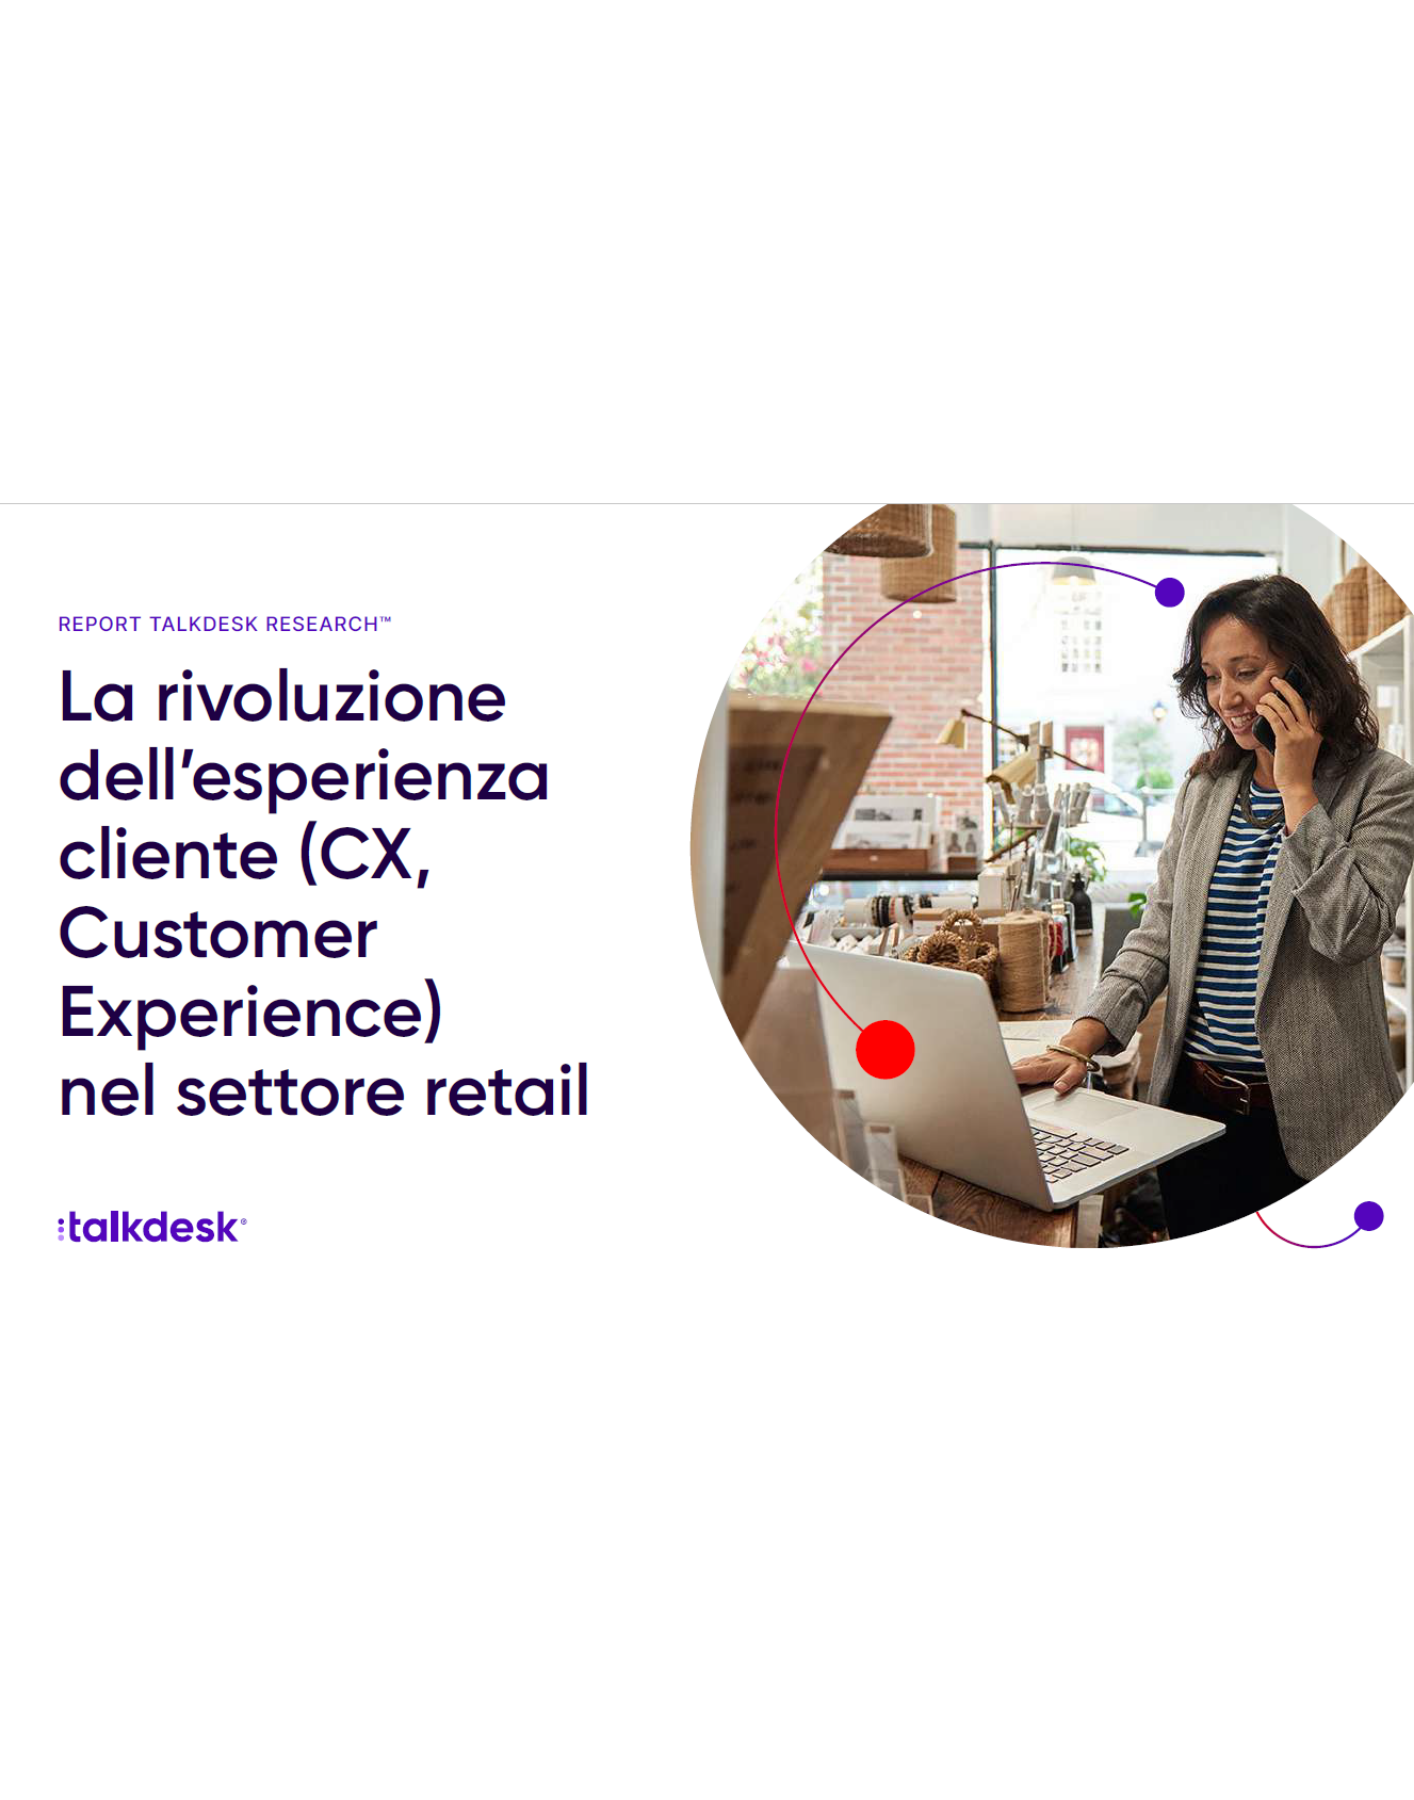 La rivoluzione dell’esperienza cliente (CX, Customer Experience) nel settore retail